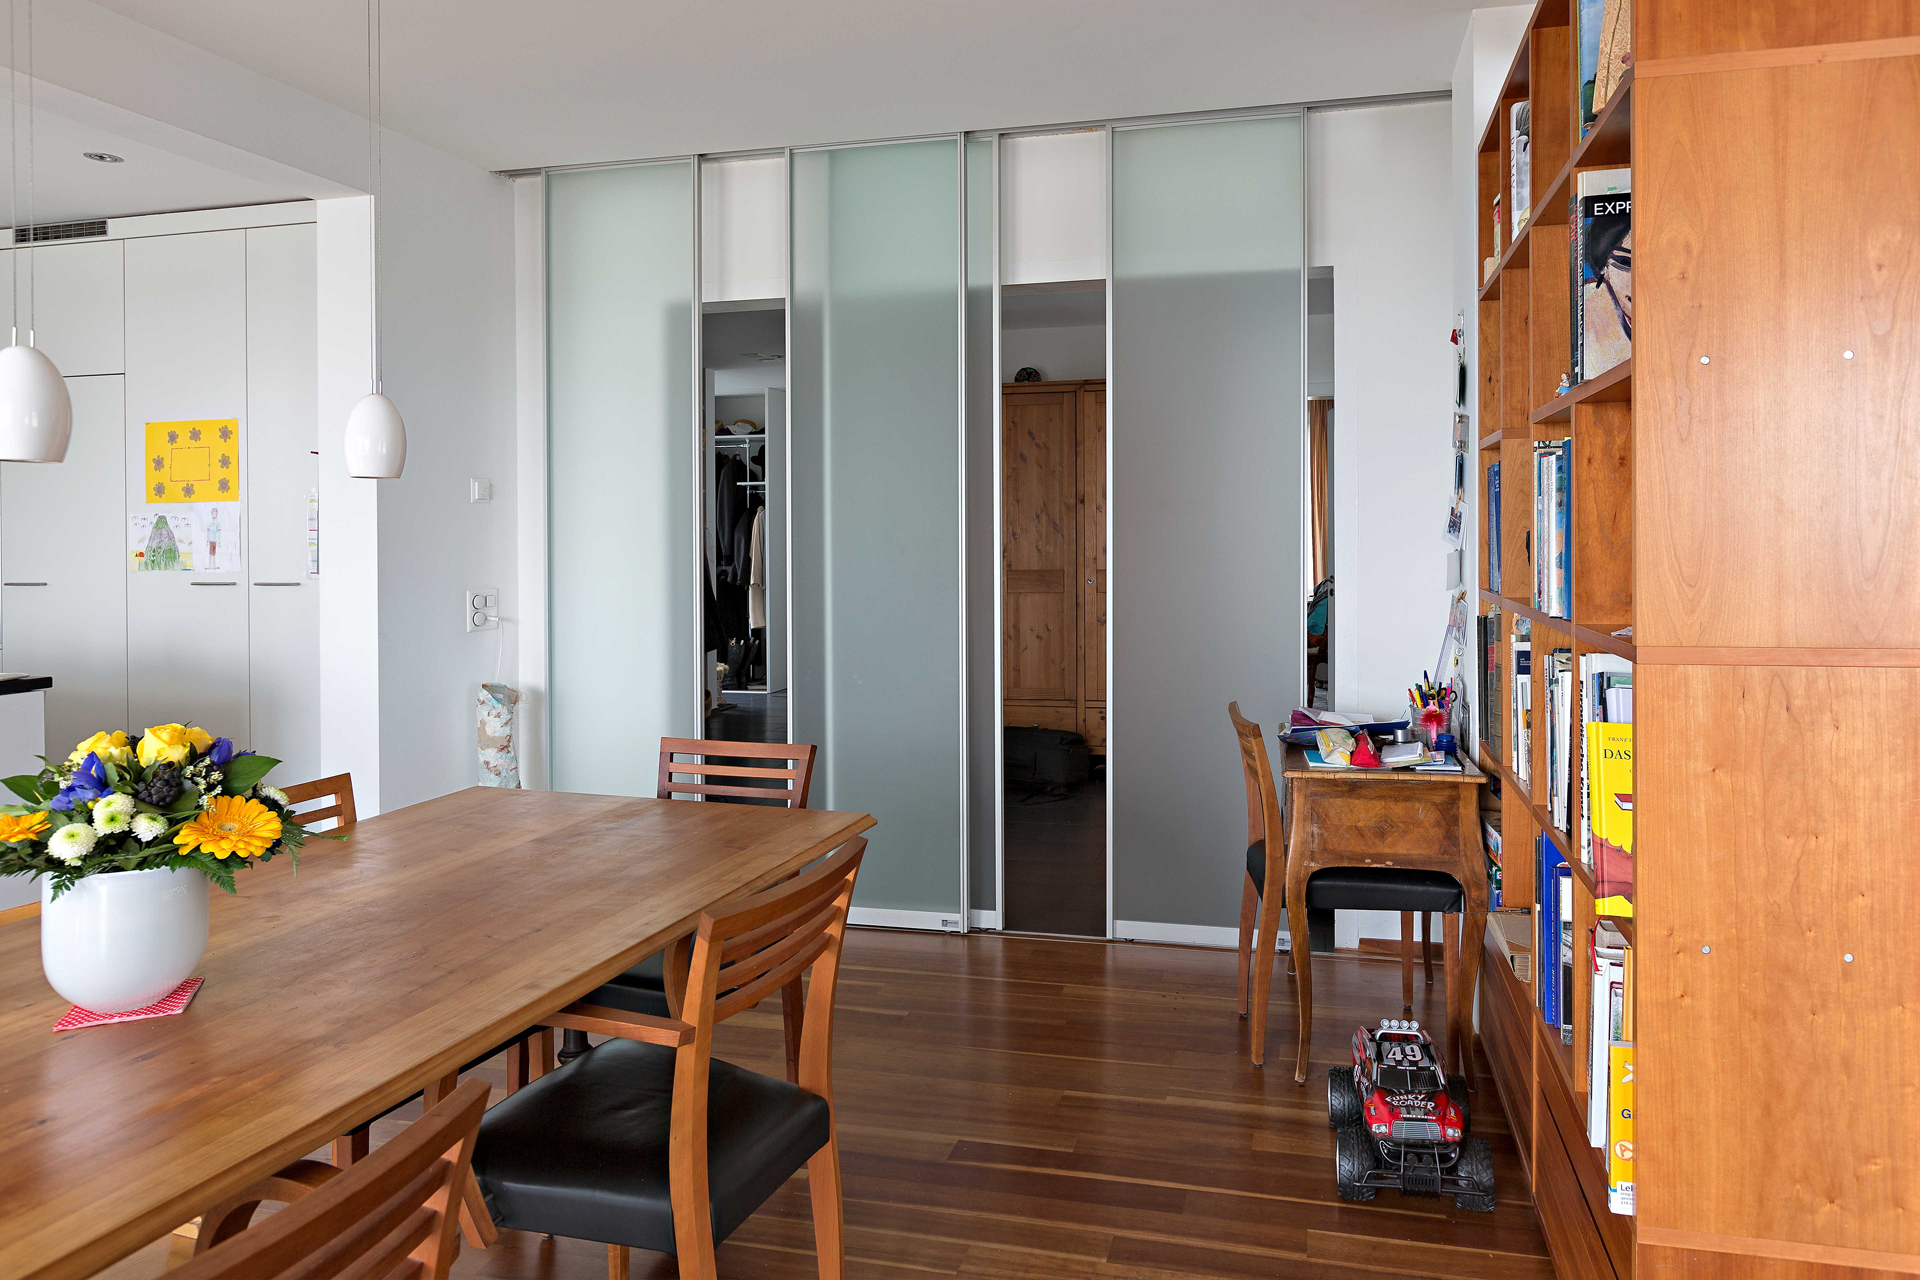 Raumteiler aus vier Schiebetüren in Glas zwischen Flur und Wohnbereich